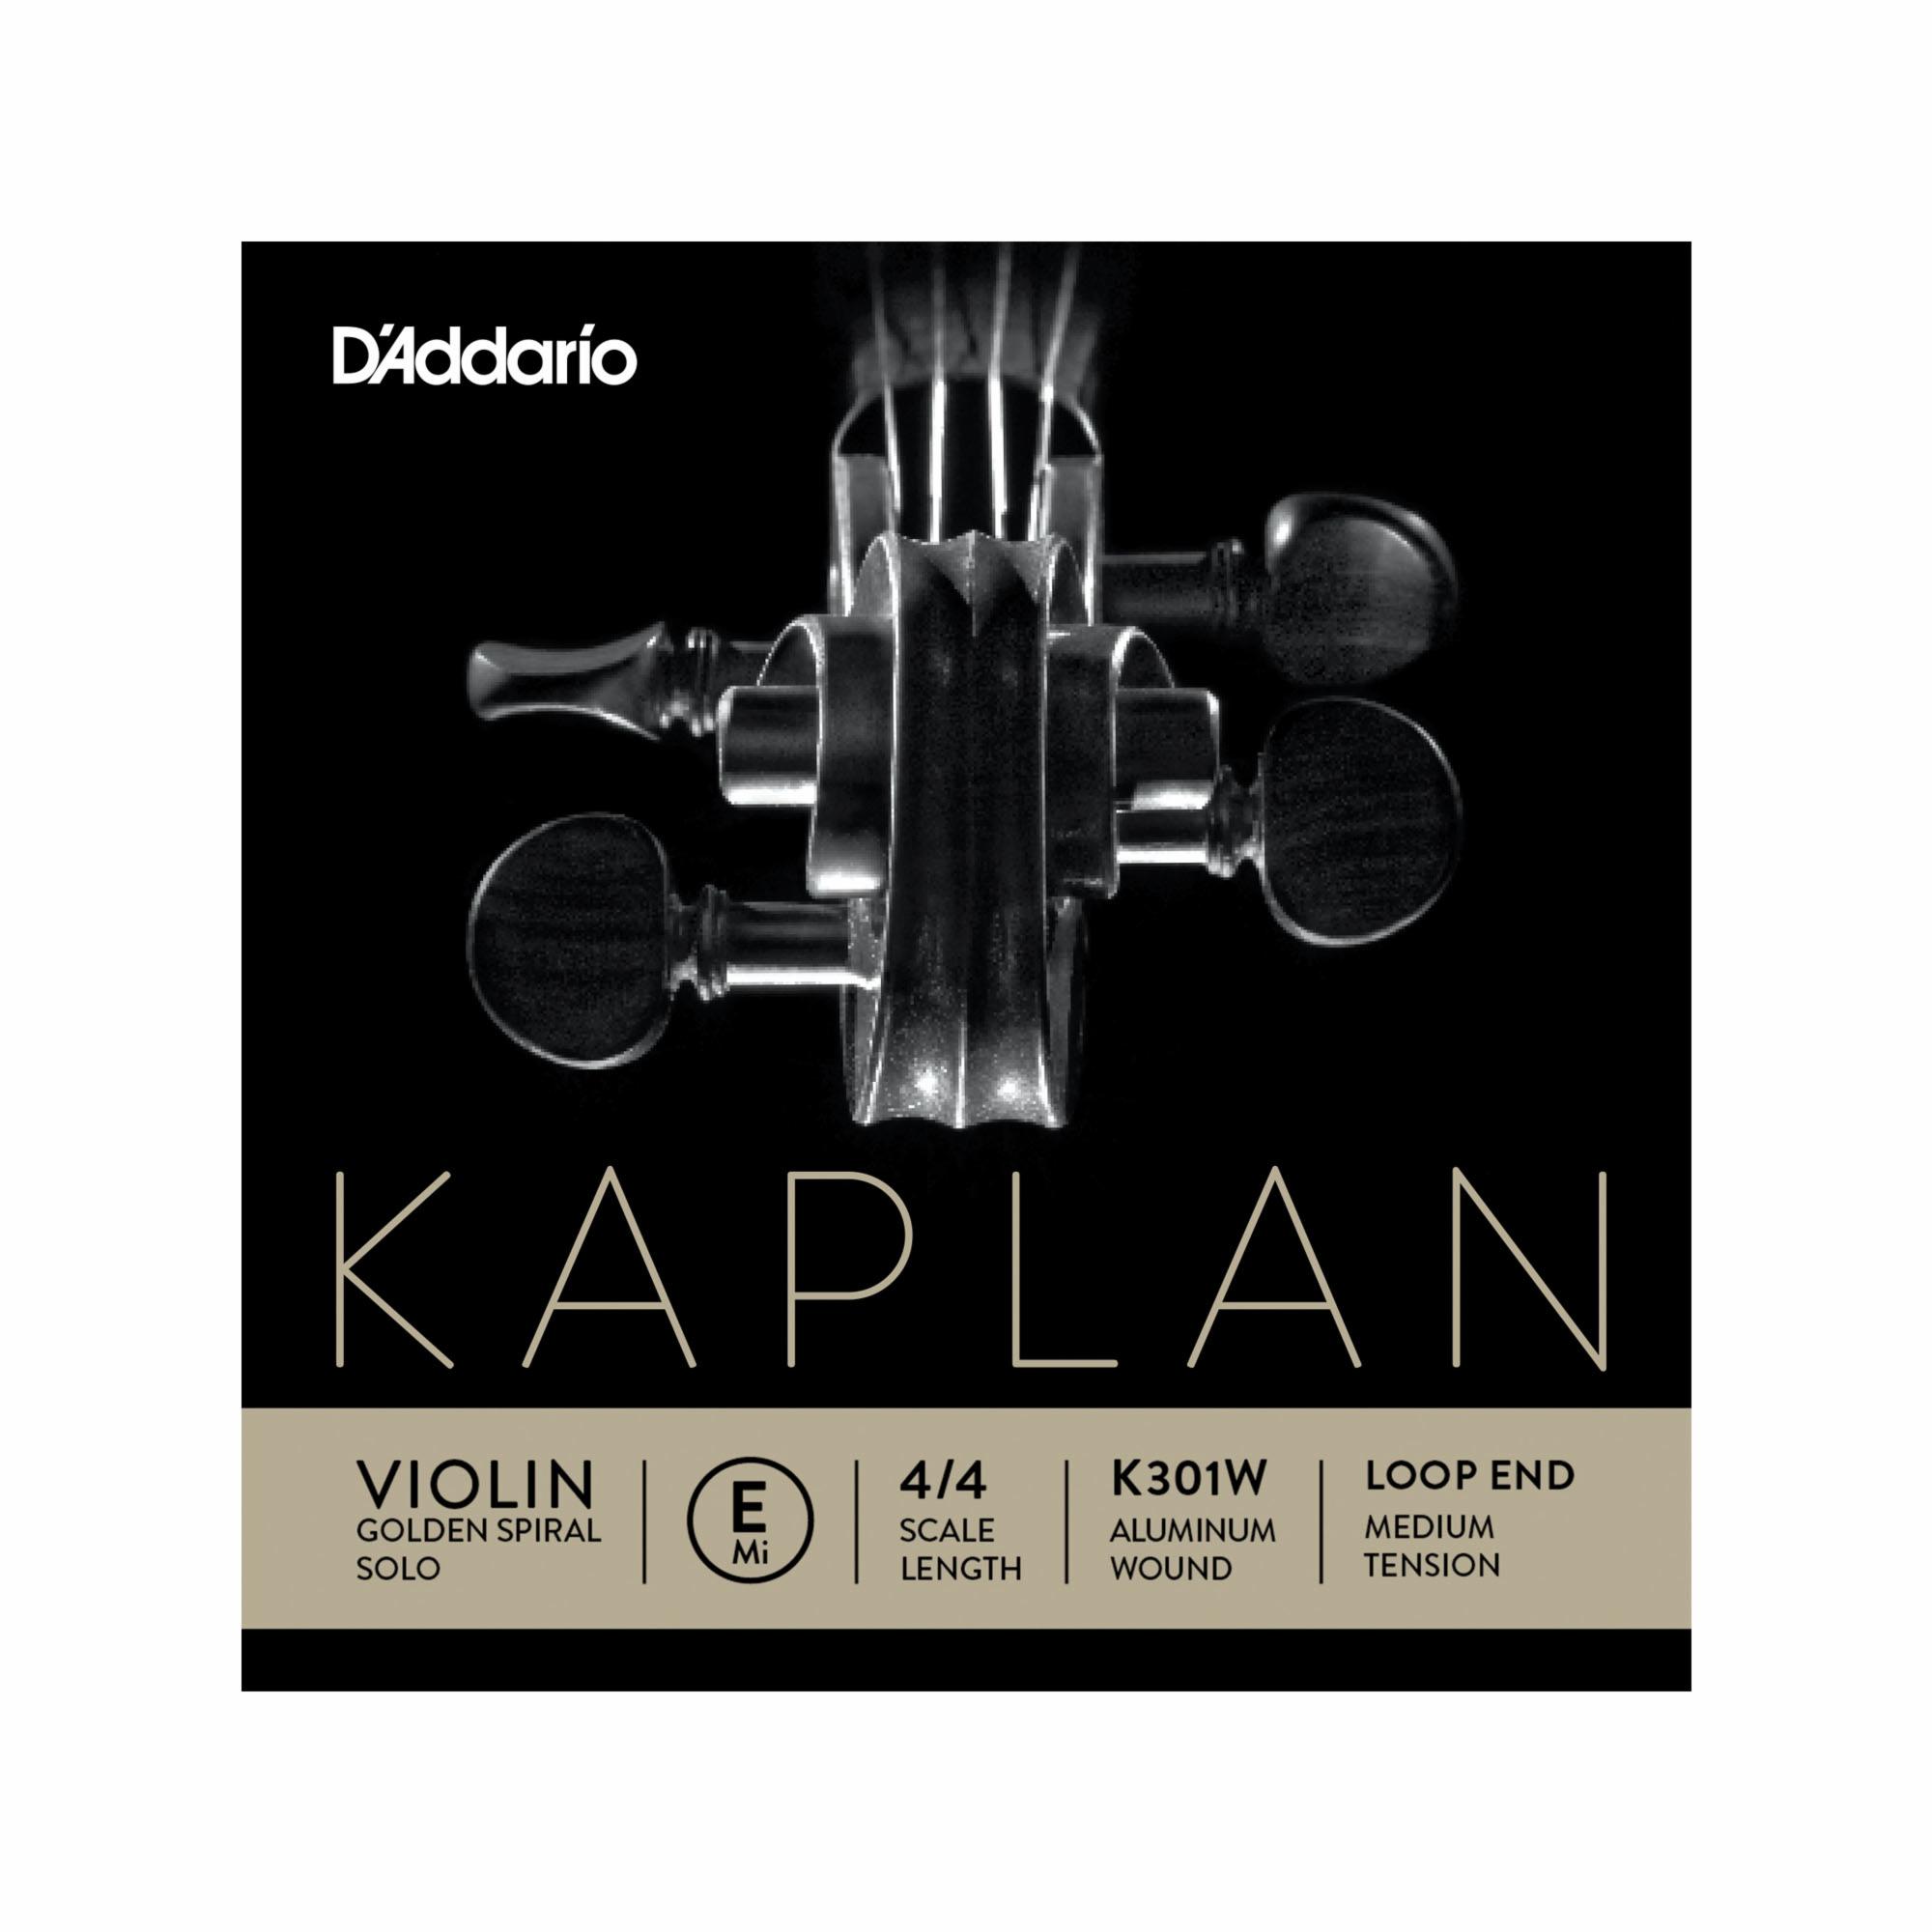 D'Addario Kaplan Golden Spiral Solo Violin E String